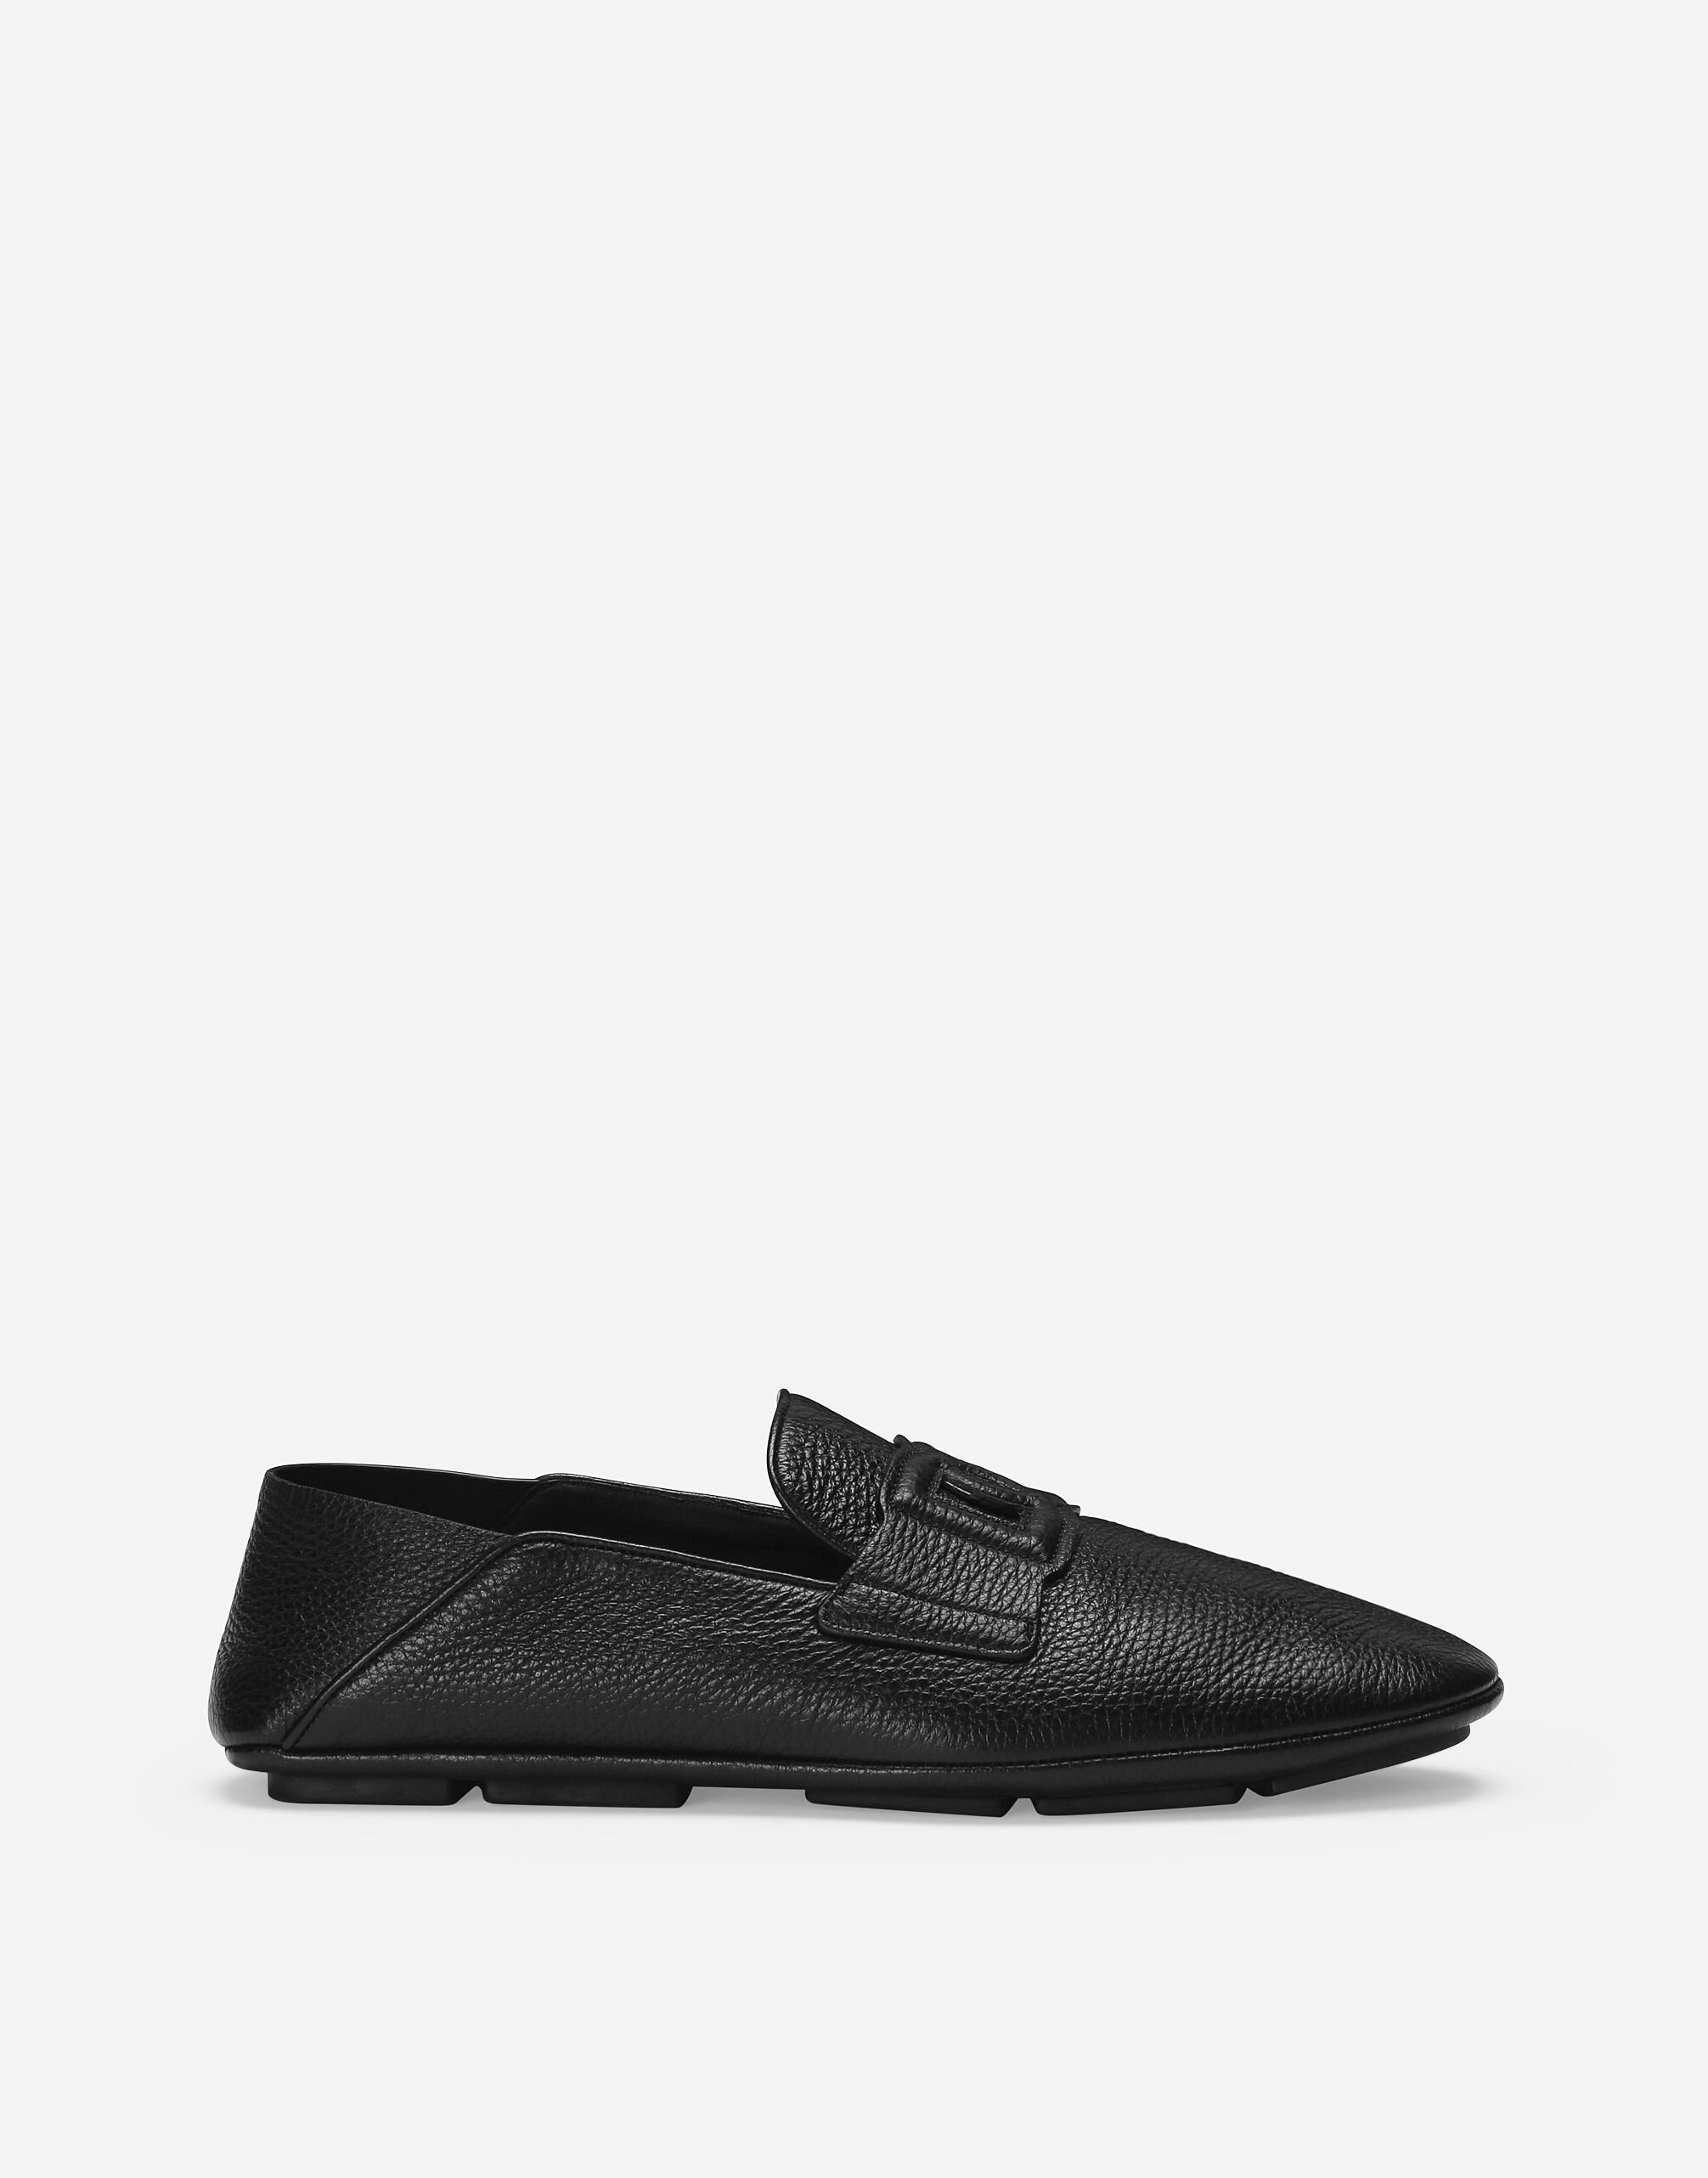 Dolce & Gabbana Deerskin driver shoes Black VG446FVP187